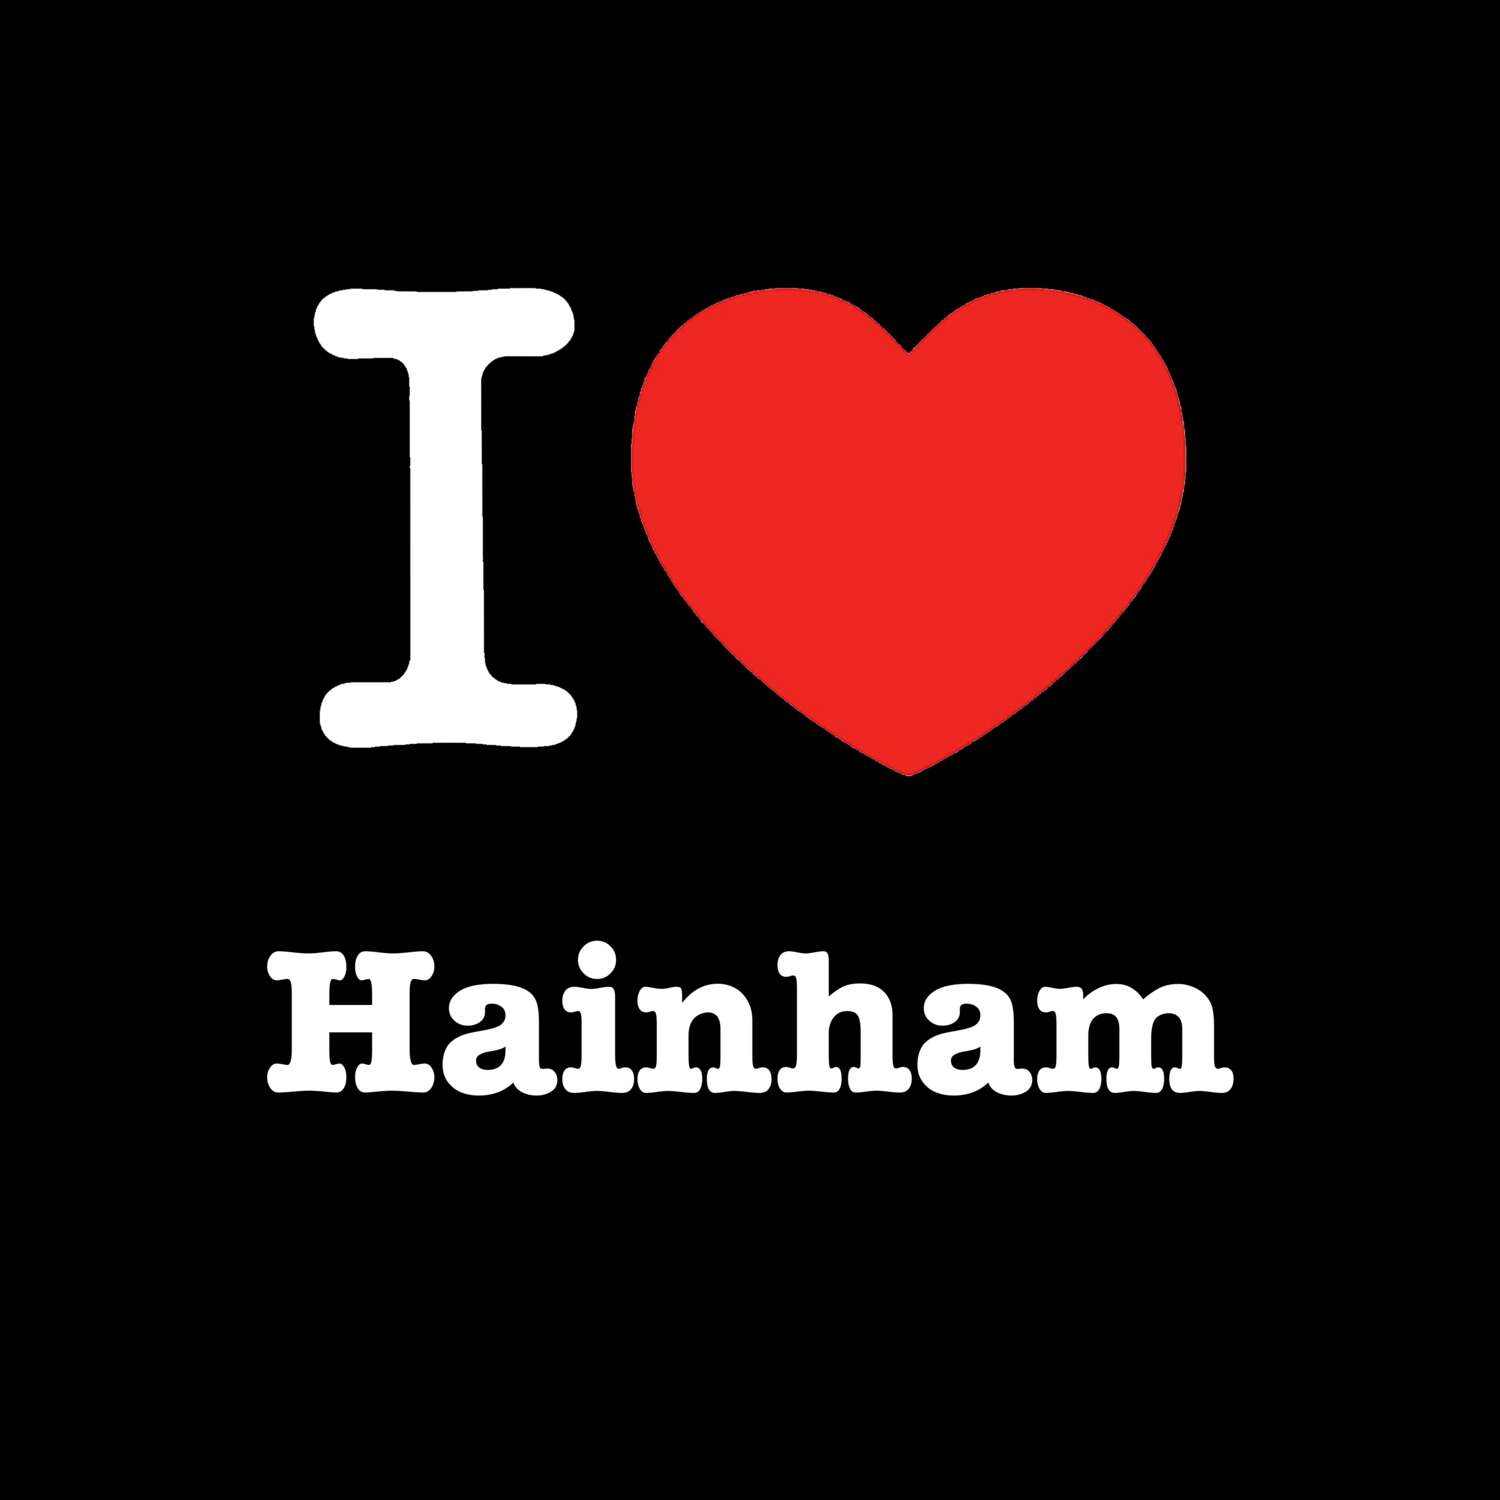 Hainham T-Shirt »I love«